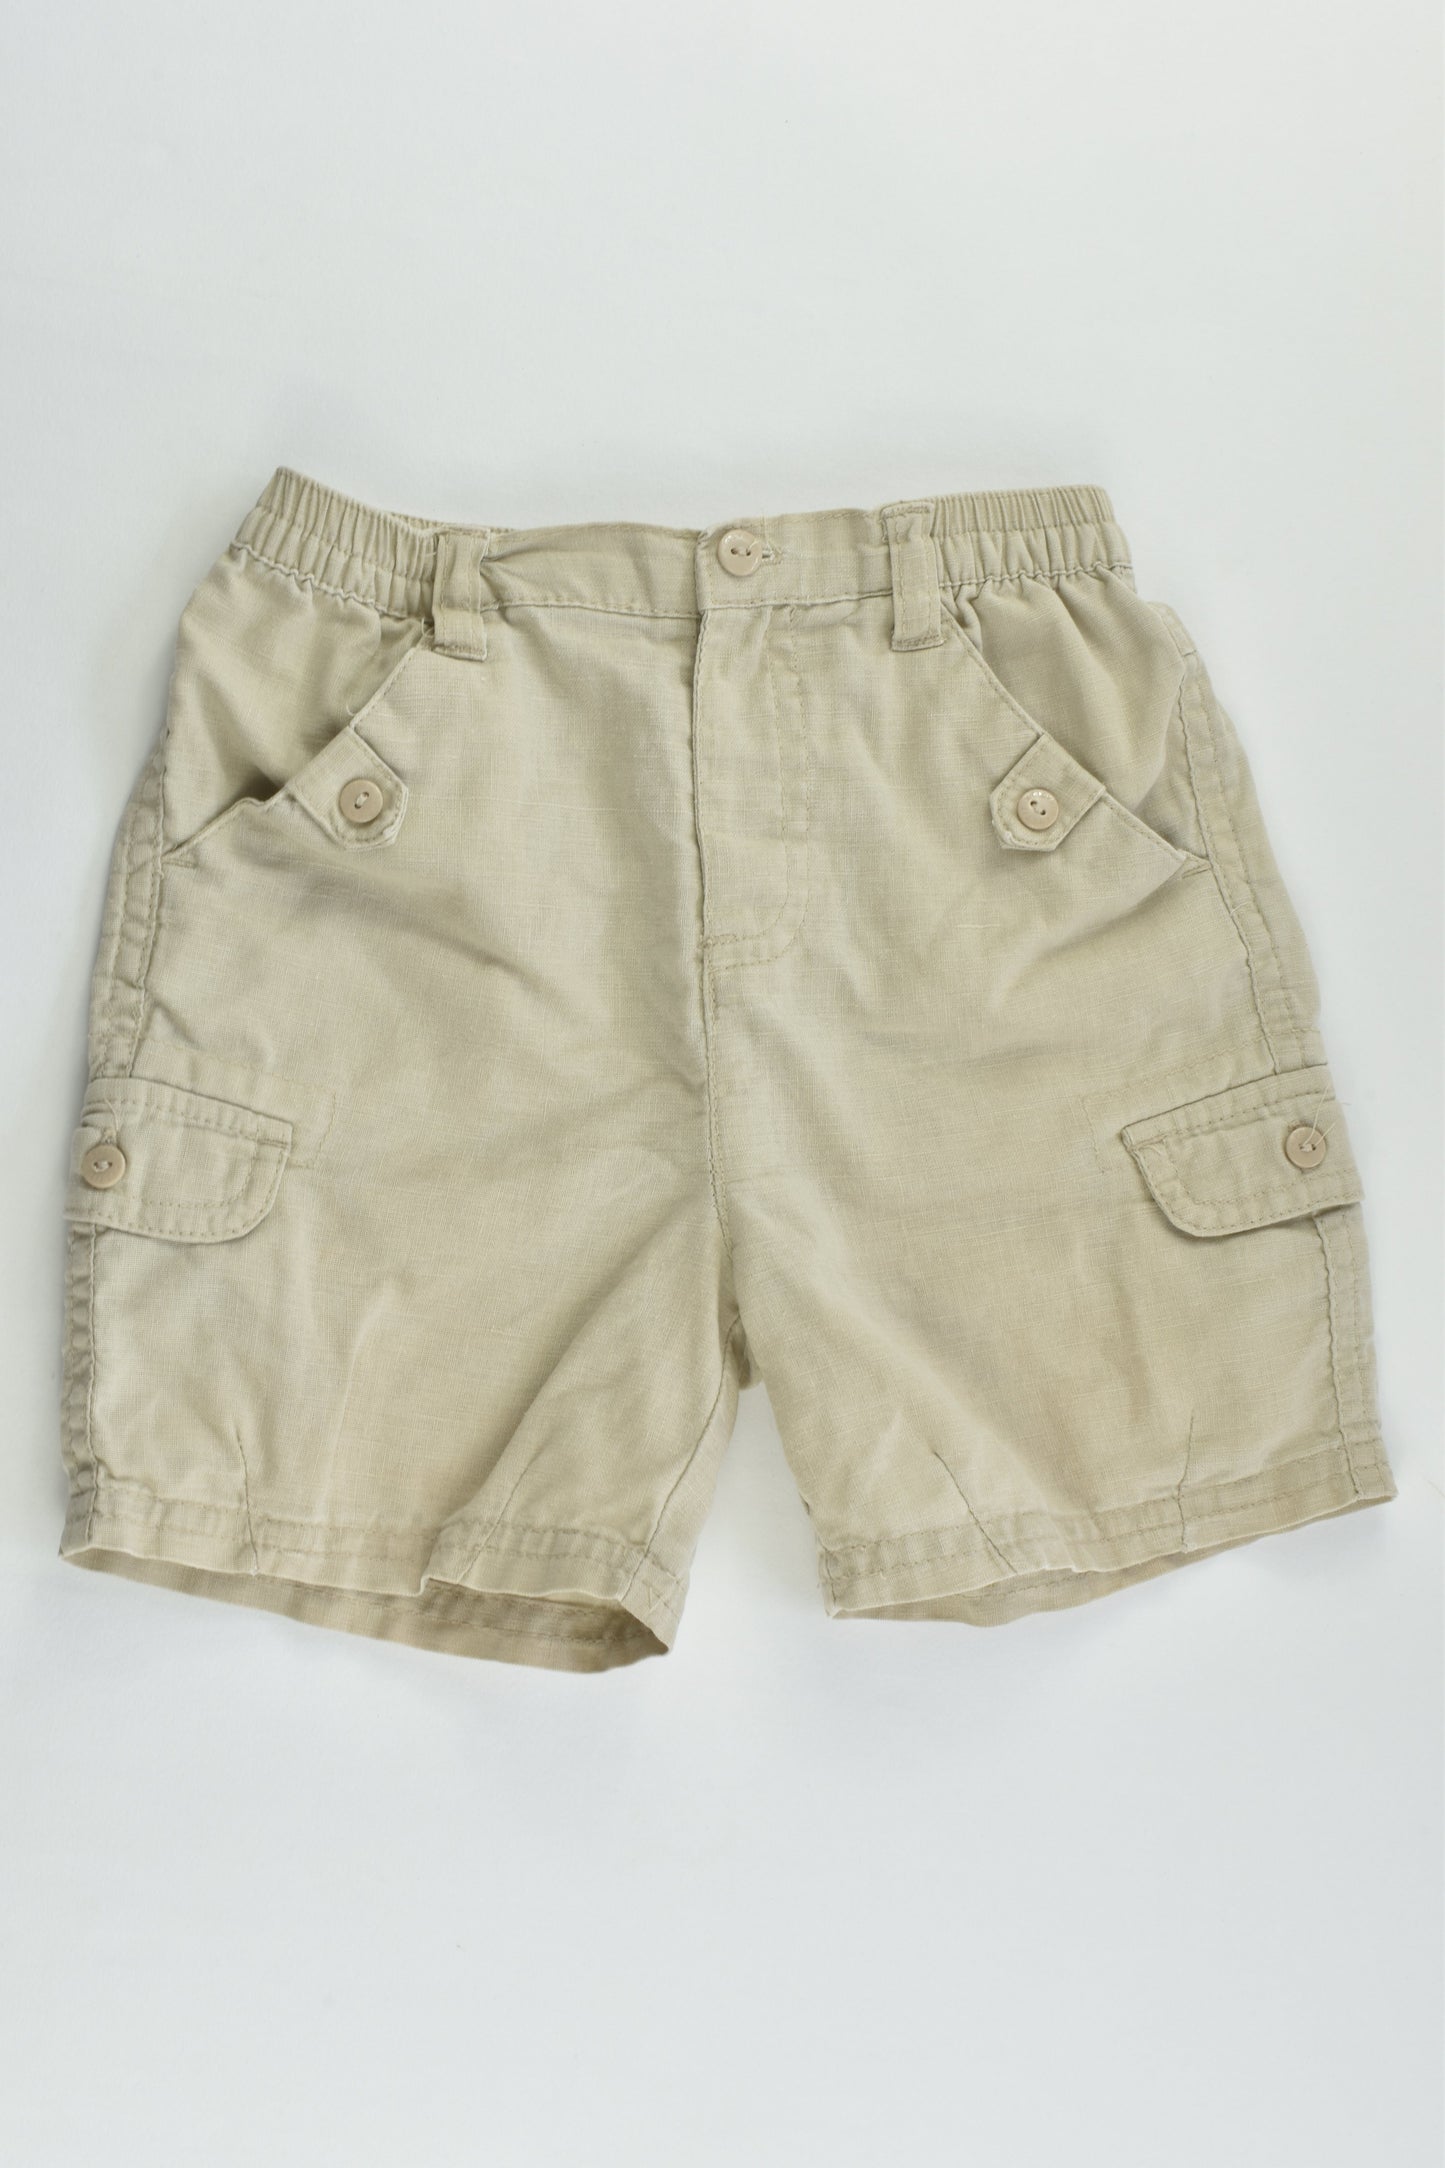 Petit Pirate (France) Size 0 (12 months) Linen/Cotton Shorts